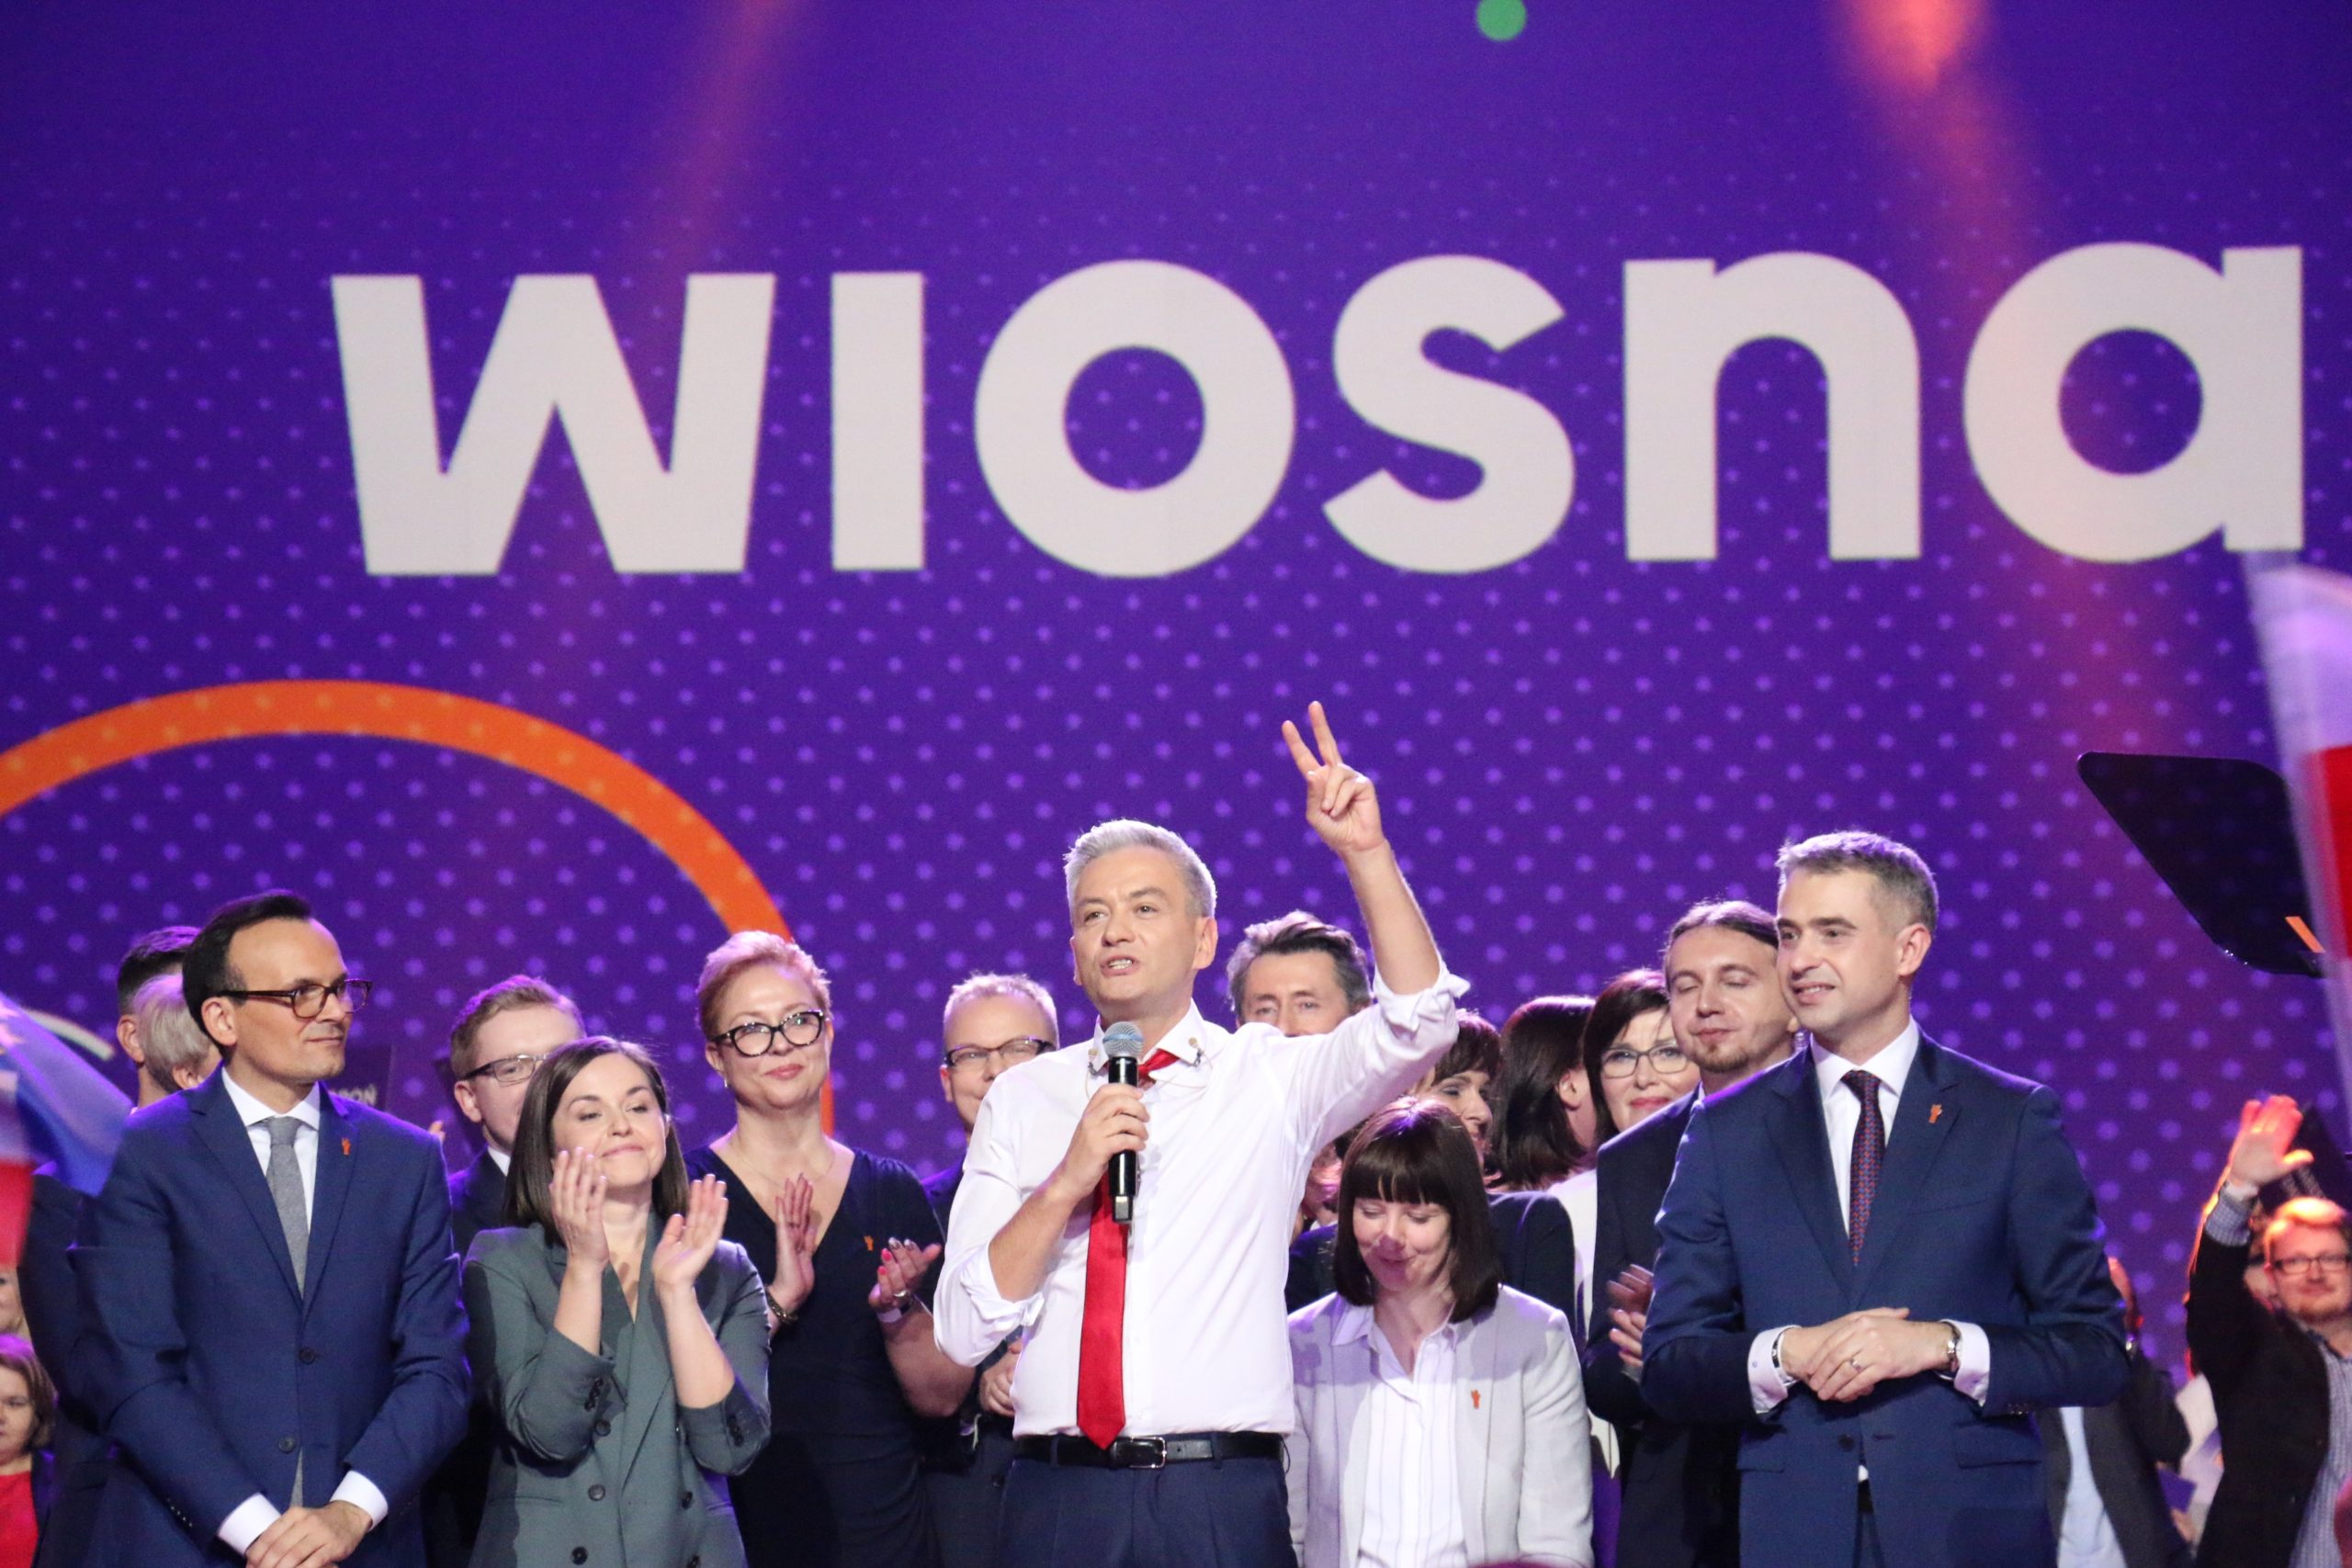 Robert Biedrońin johtaman vasemmistoliberaalin Kevät-puolueen perustamisesta kerrottiin 6000 kuulijalle Varsovan Torwar-hallissa helmikuun alussa. 